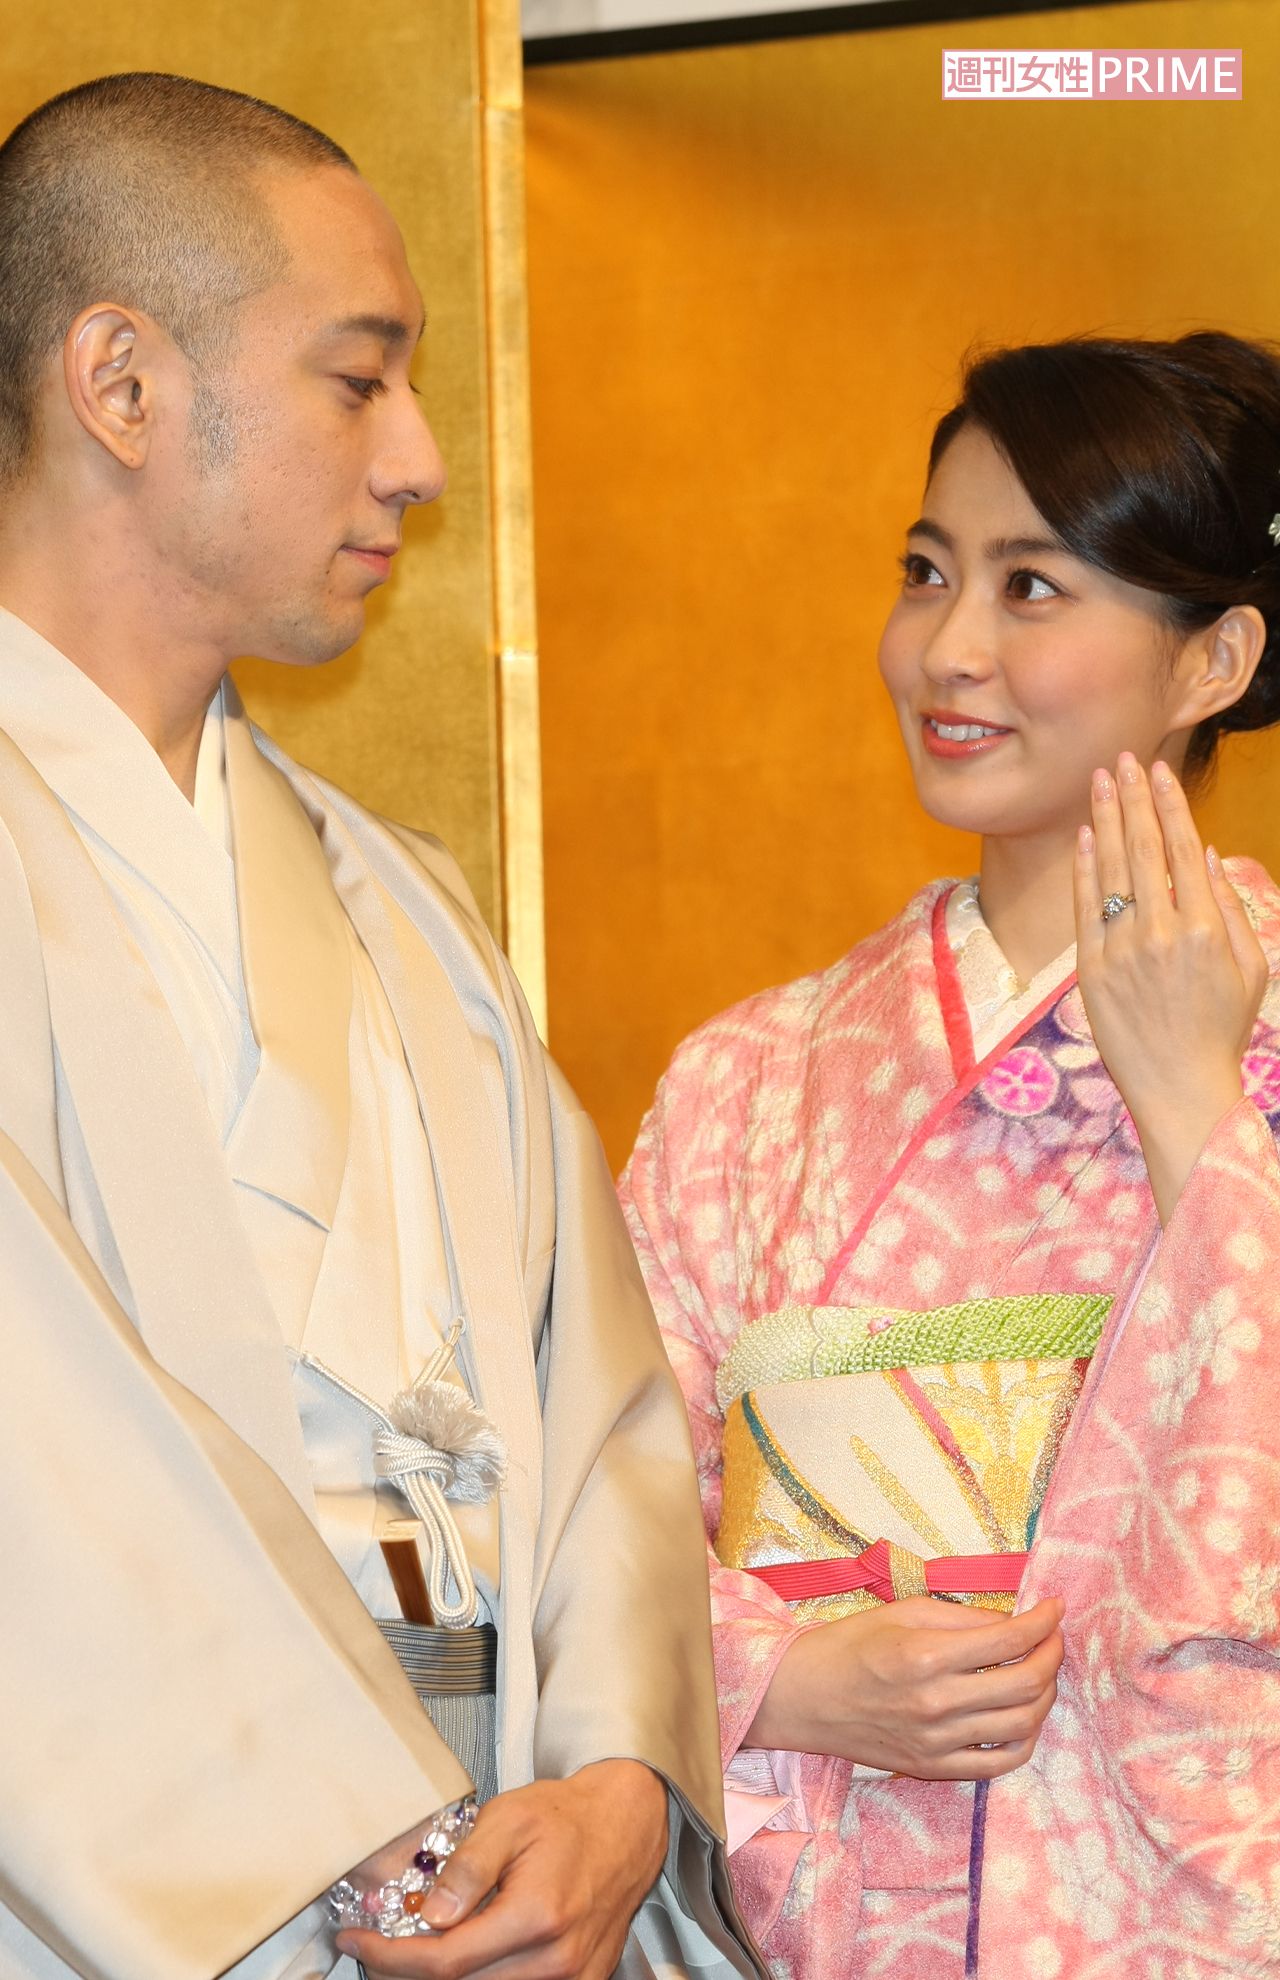 小林麻央の画像 写真 海老蔵と麻央さんの結婚会見 24枚目 週刊女性prime